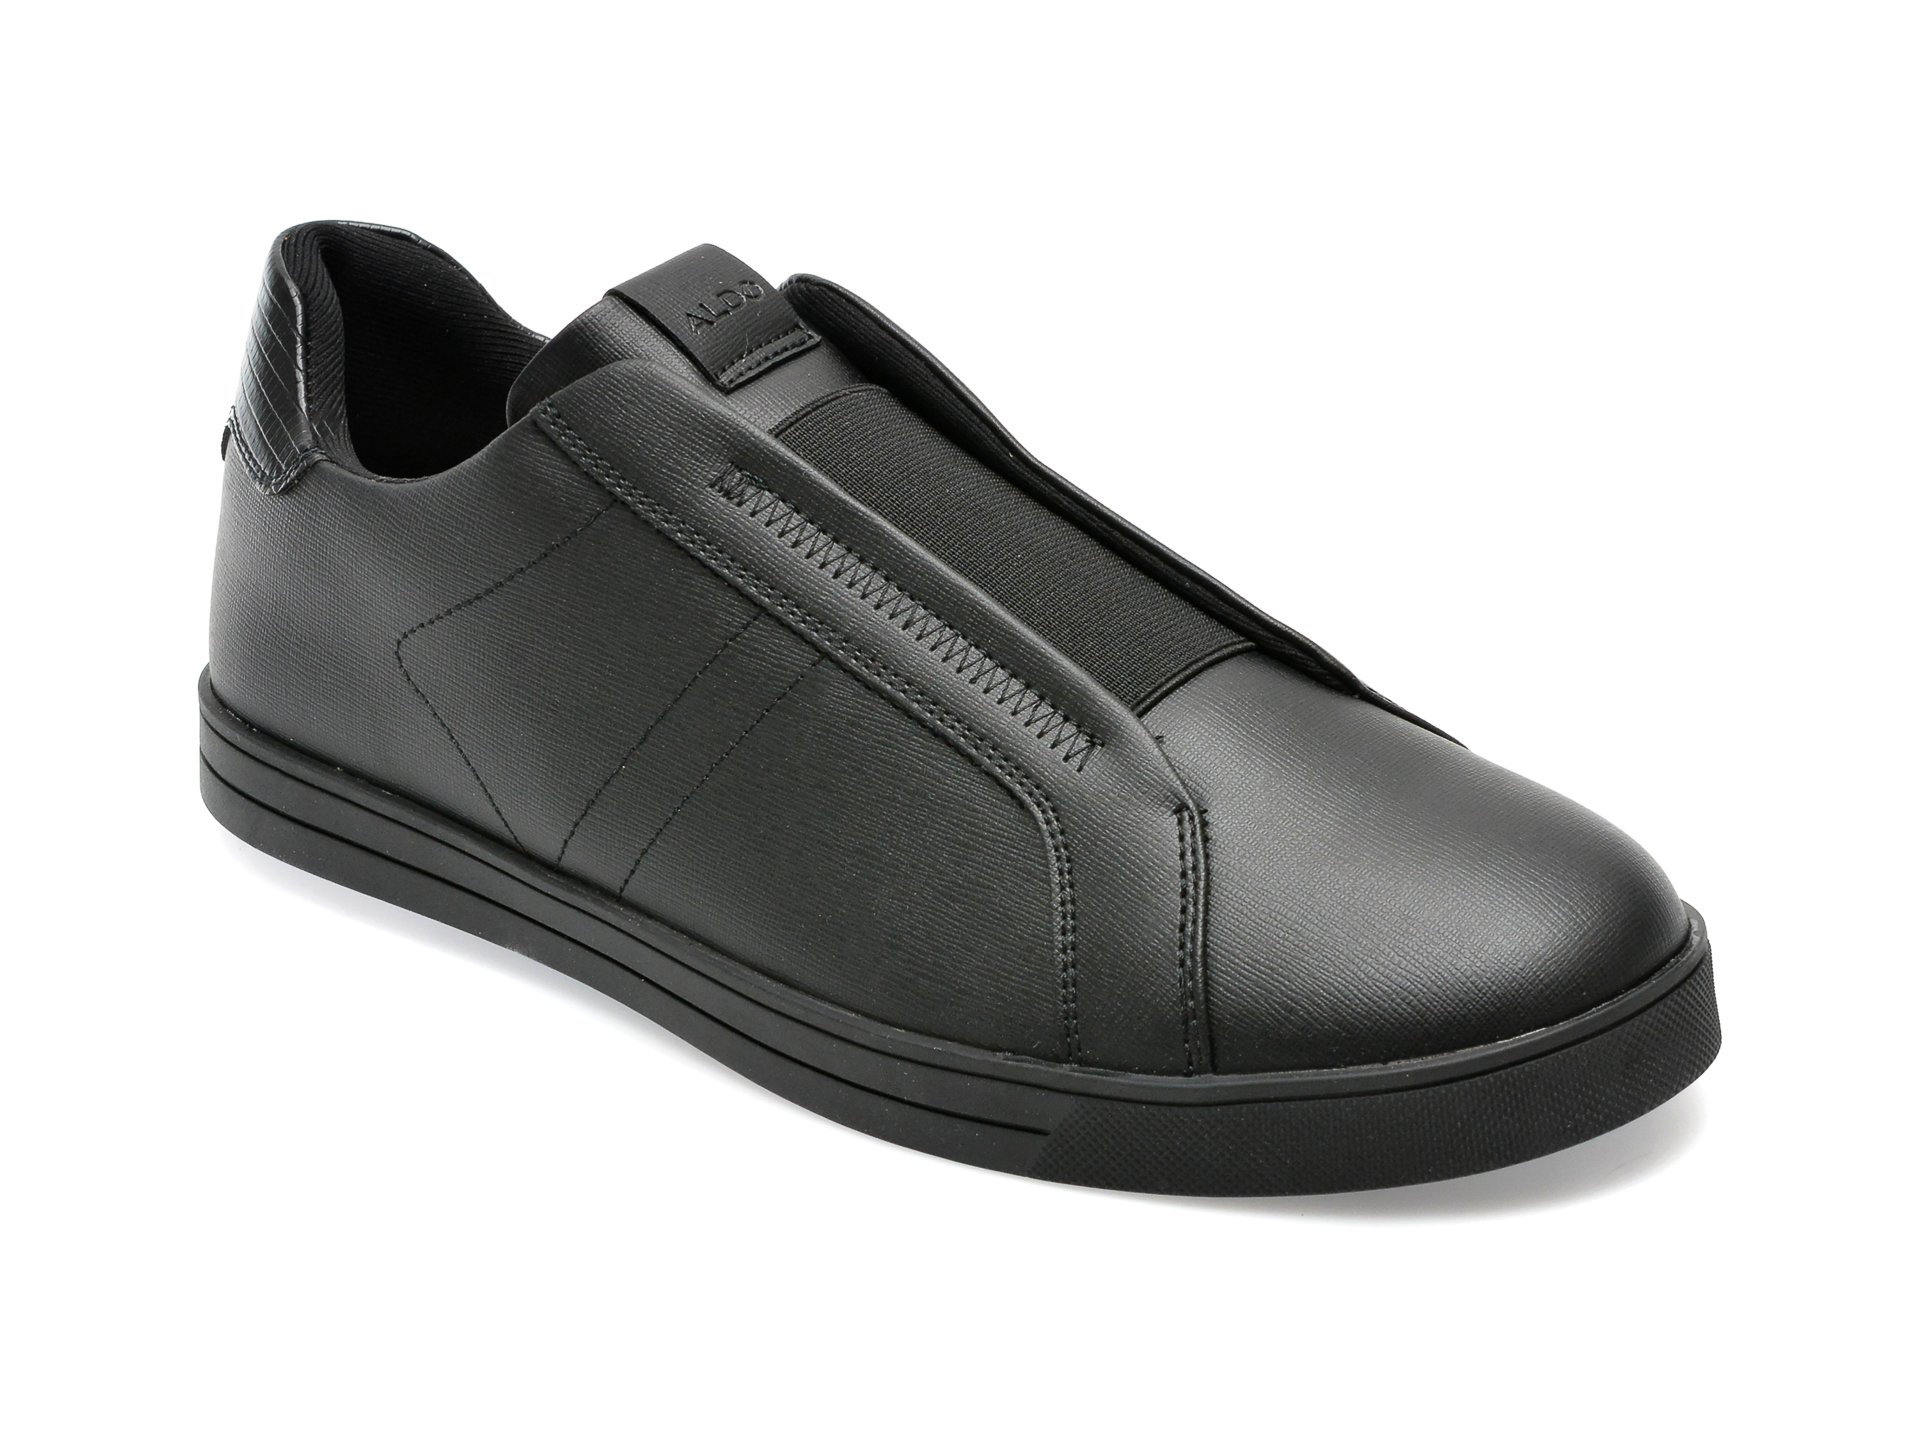 Pantofi ALDO negri, ELOP001, din piele ecologica